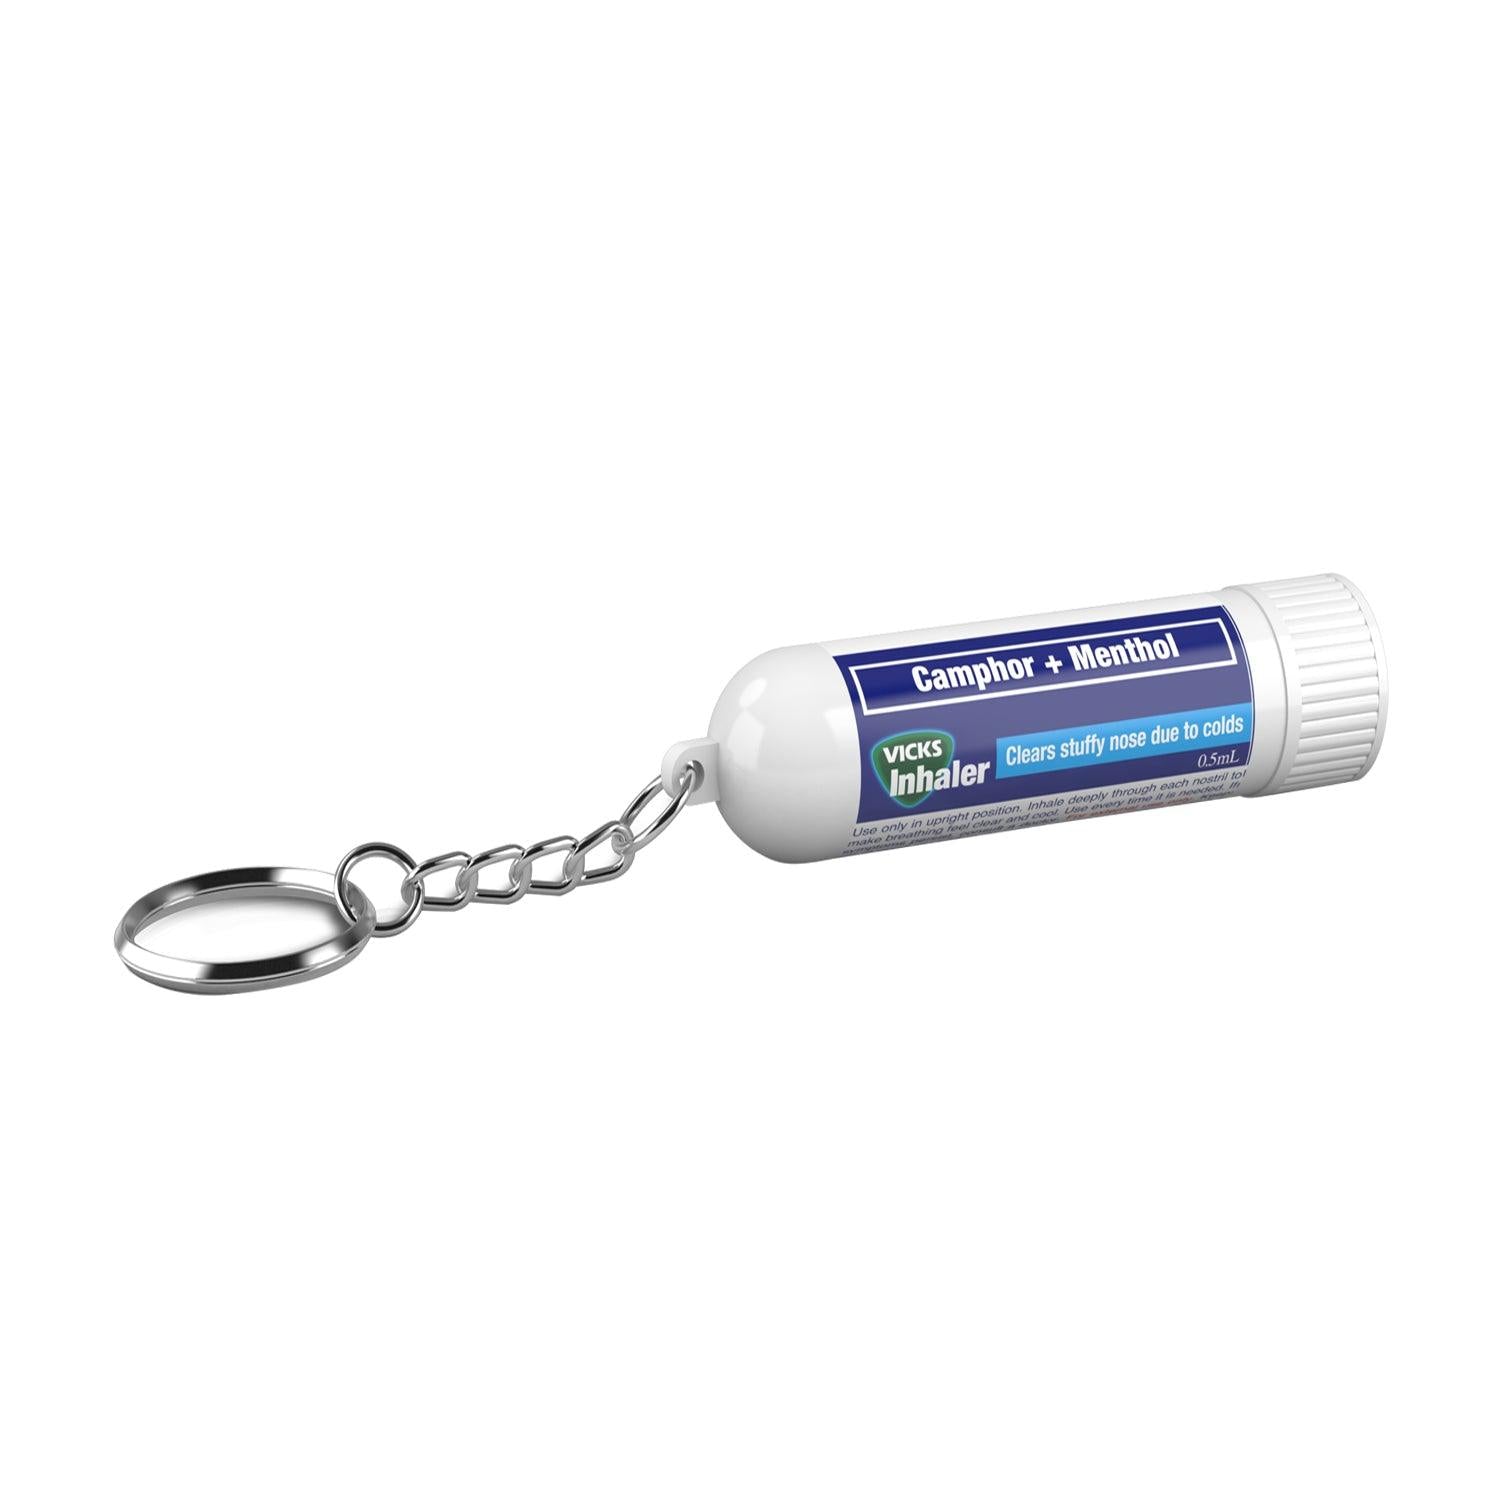 Buy Vicks Inhaler with Keychain Online